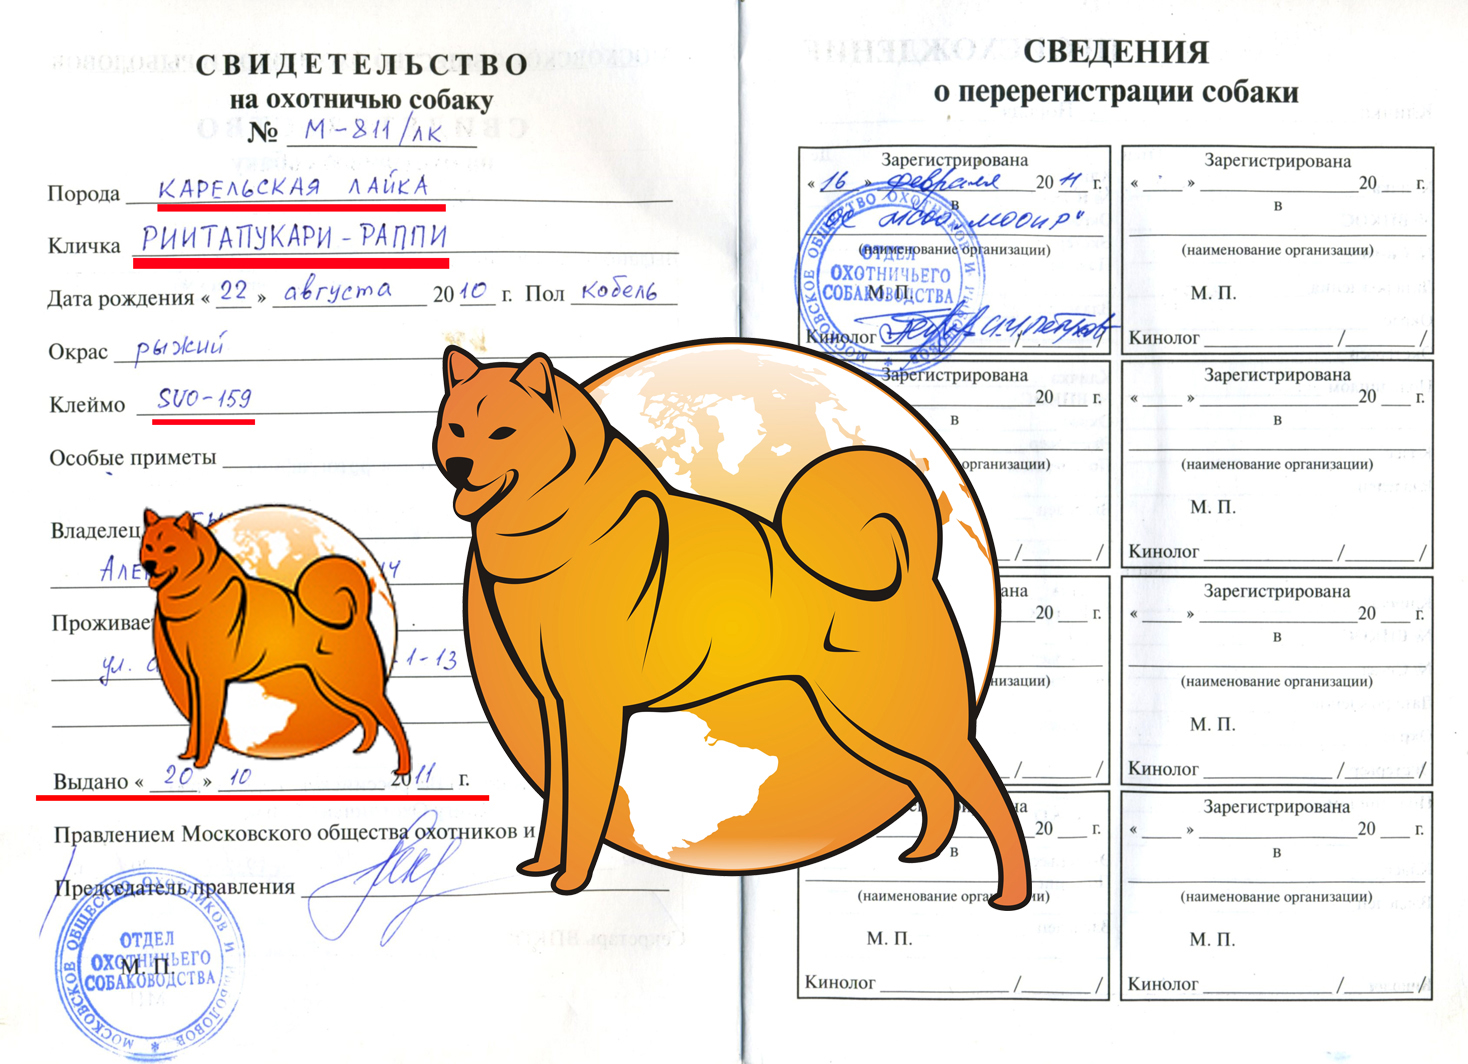 размер фото на паспорт собаки